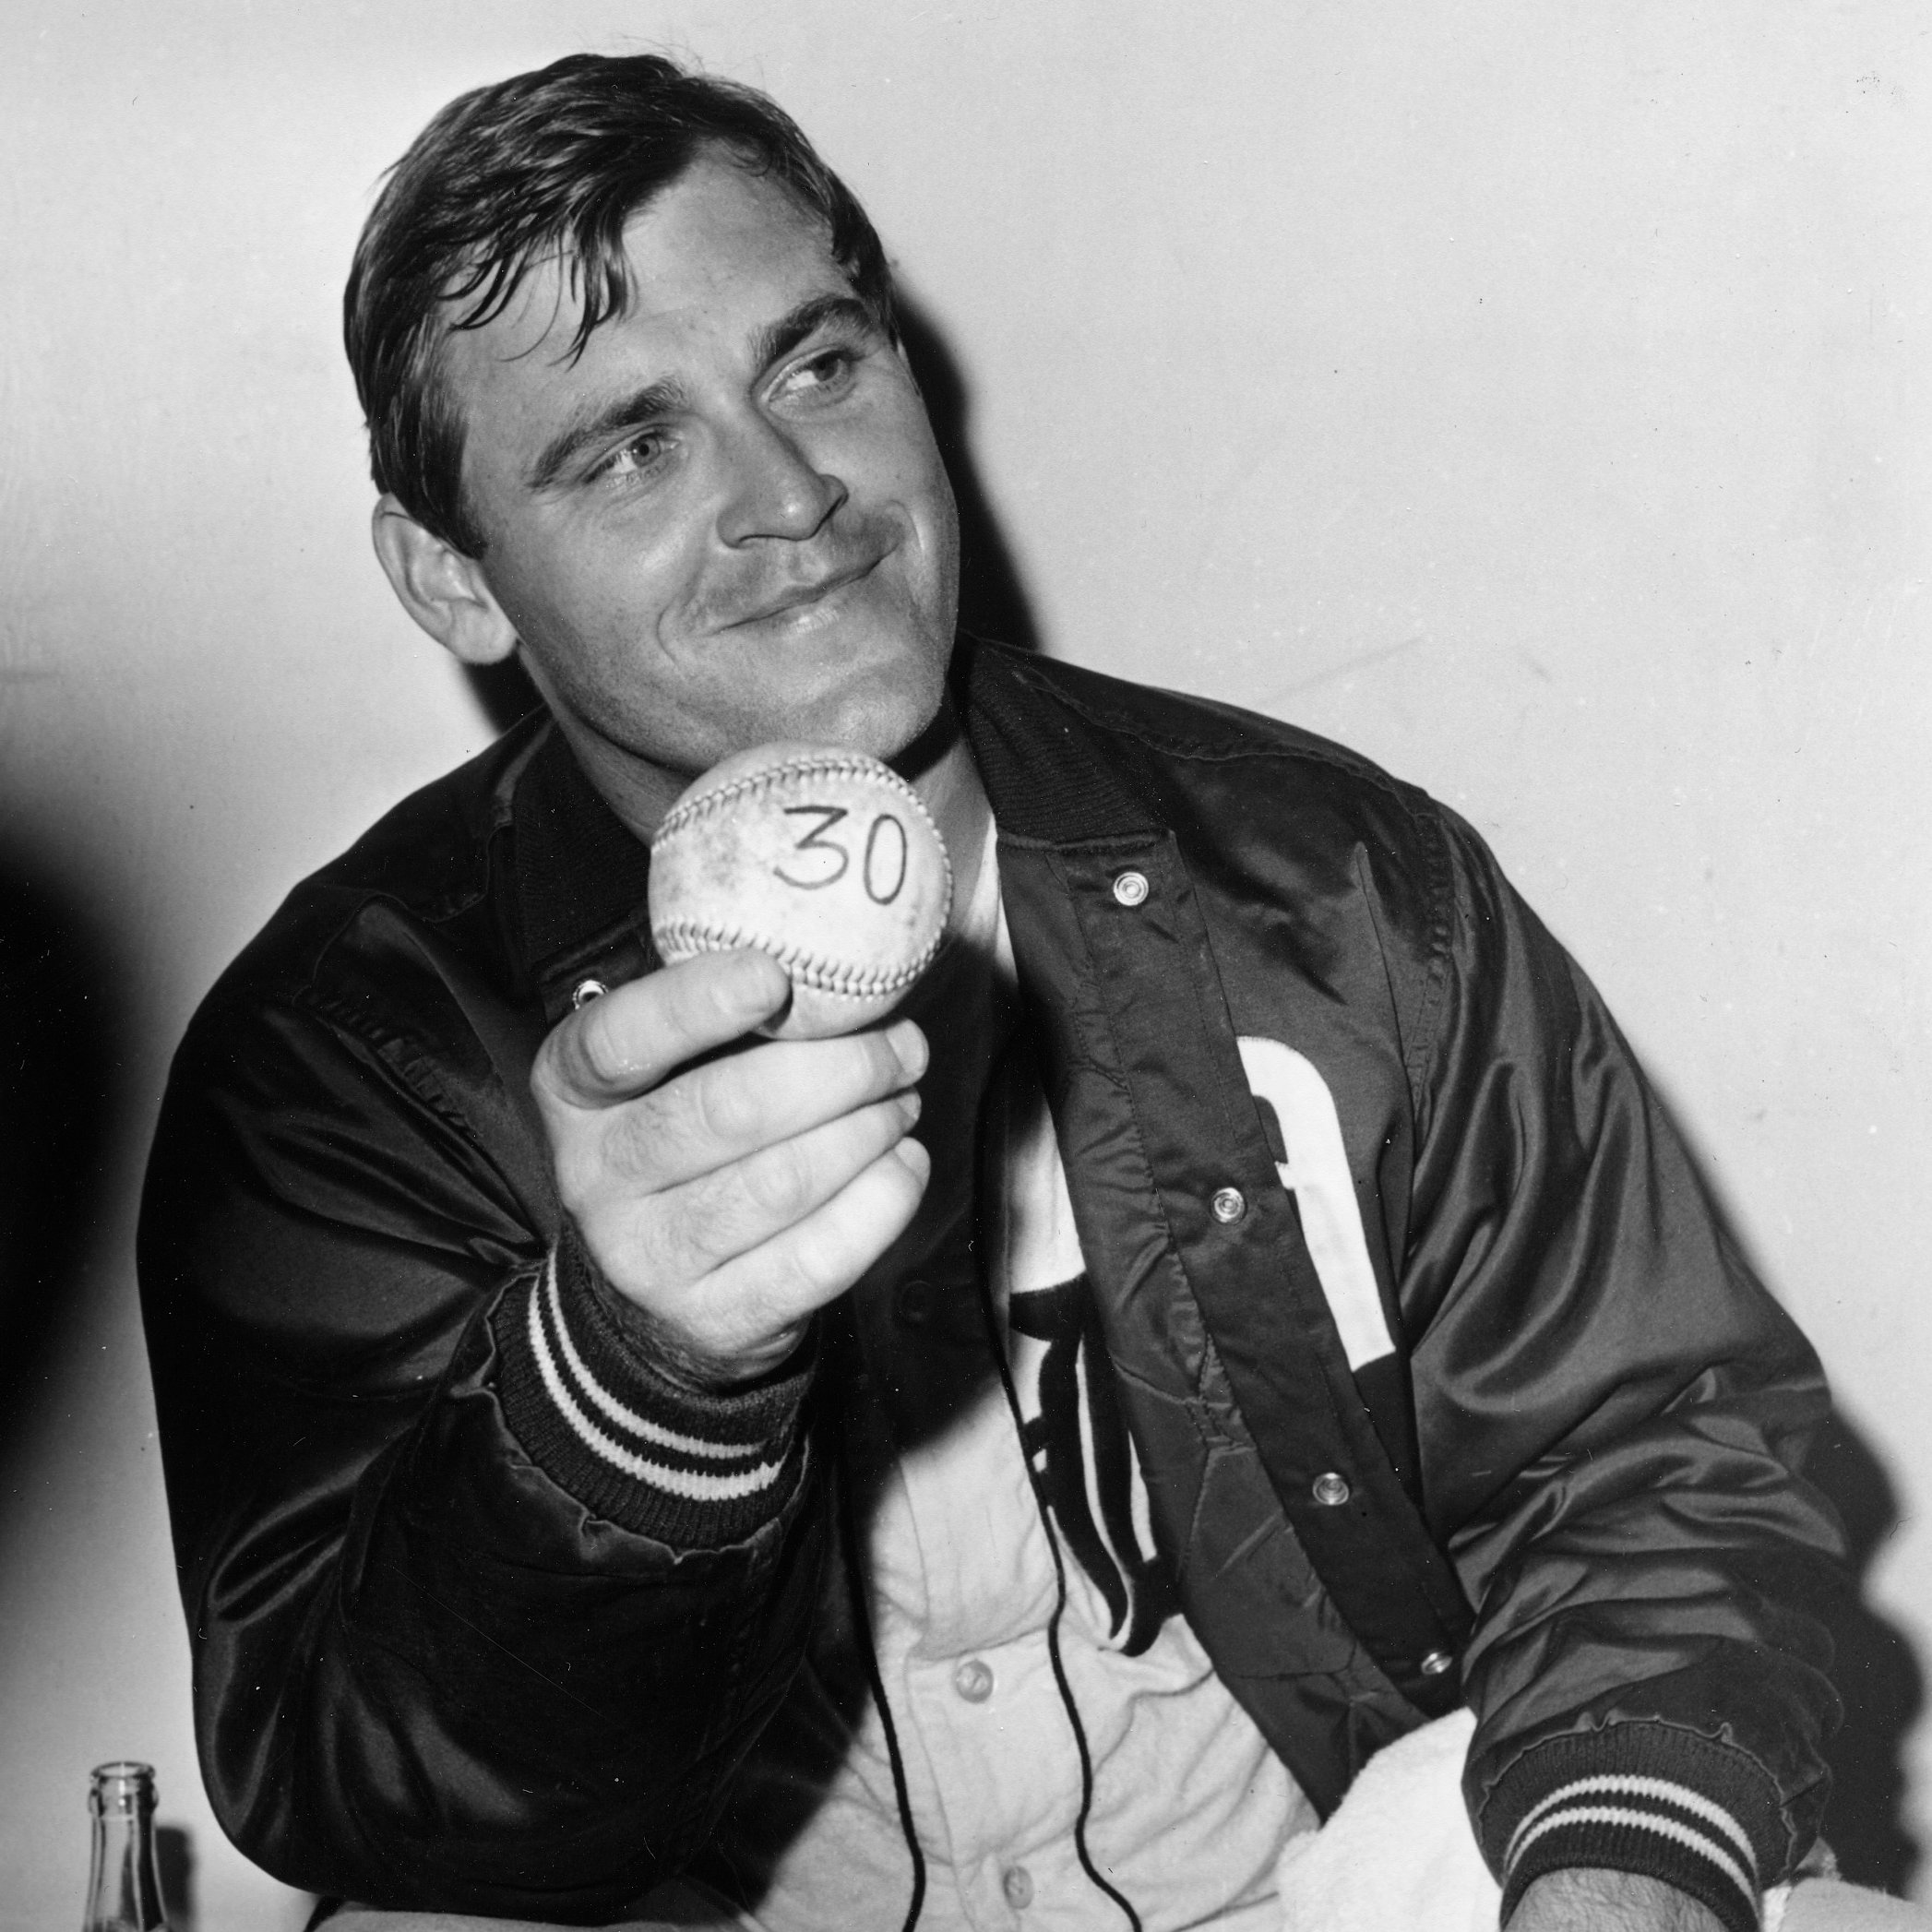 The Disgrace of Denny McLain, Baseball's Last 30 Game Winner